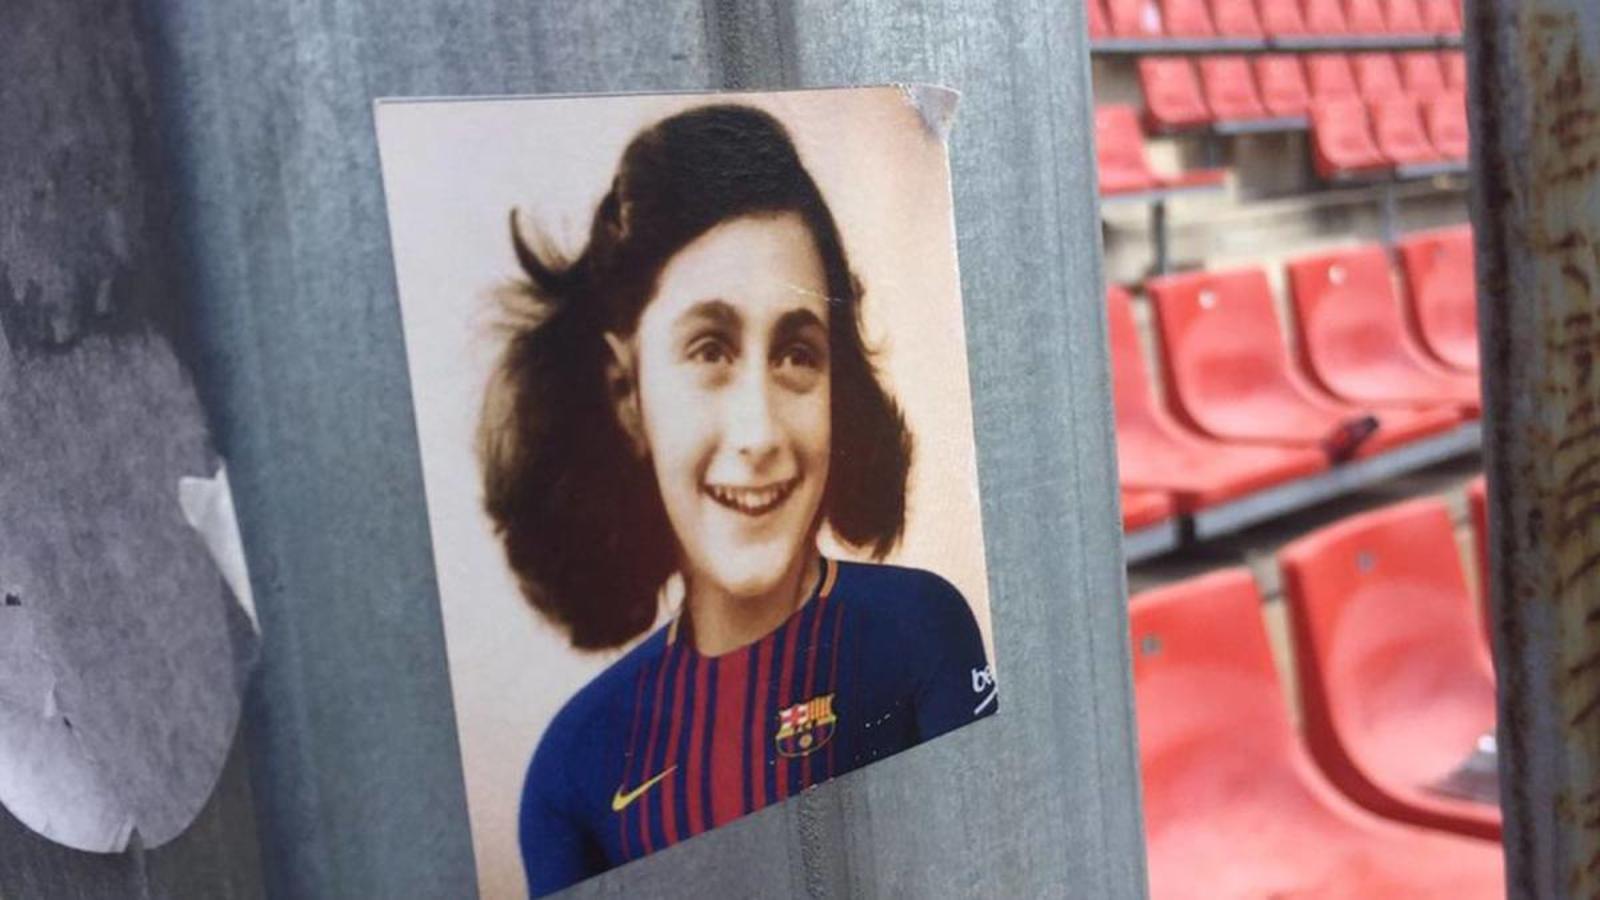 La entidades consideran que el hecho de exhibir la imagen de Ana Frank vestida con una camiseta del Barcelona 'es una intolerable muestra de antisemitismo y una vejación de todas las víctimas del holocausto'. (Especial)